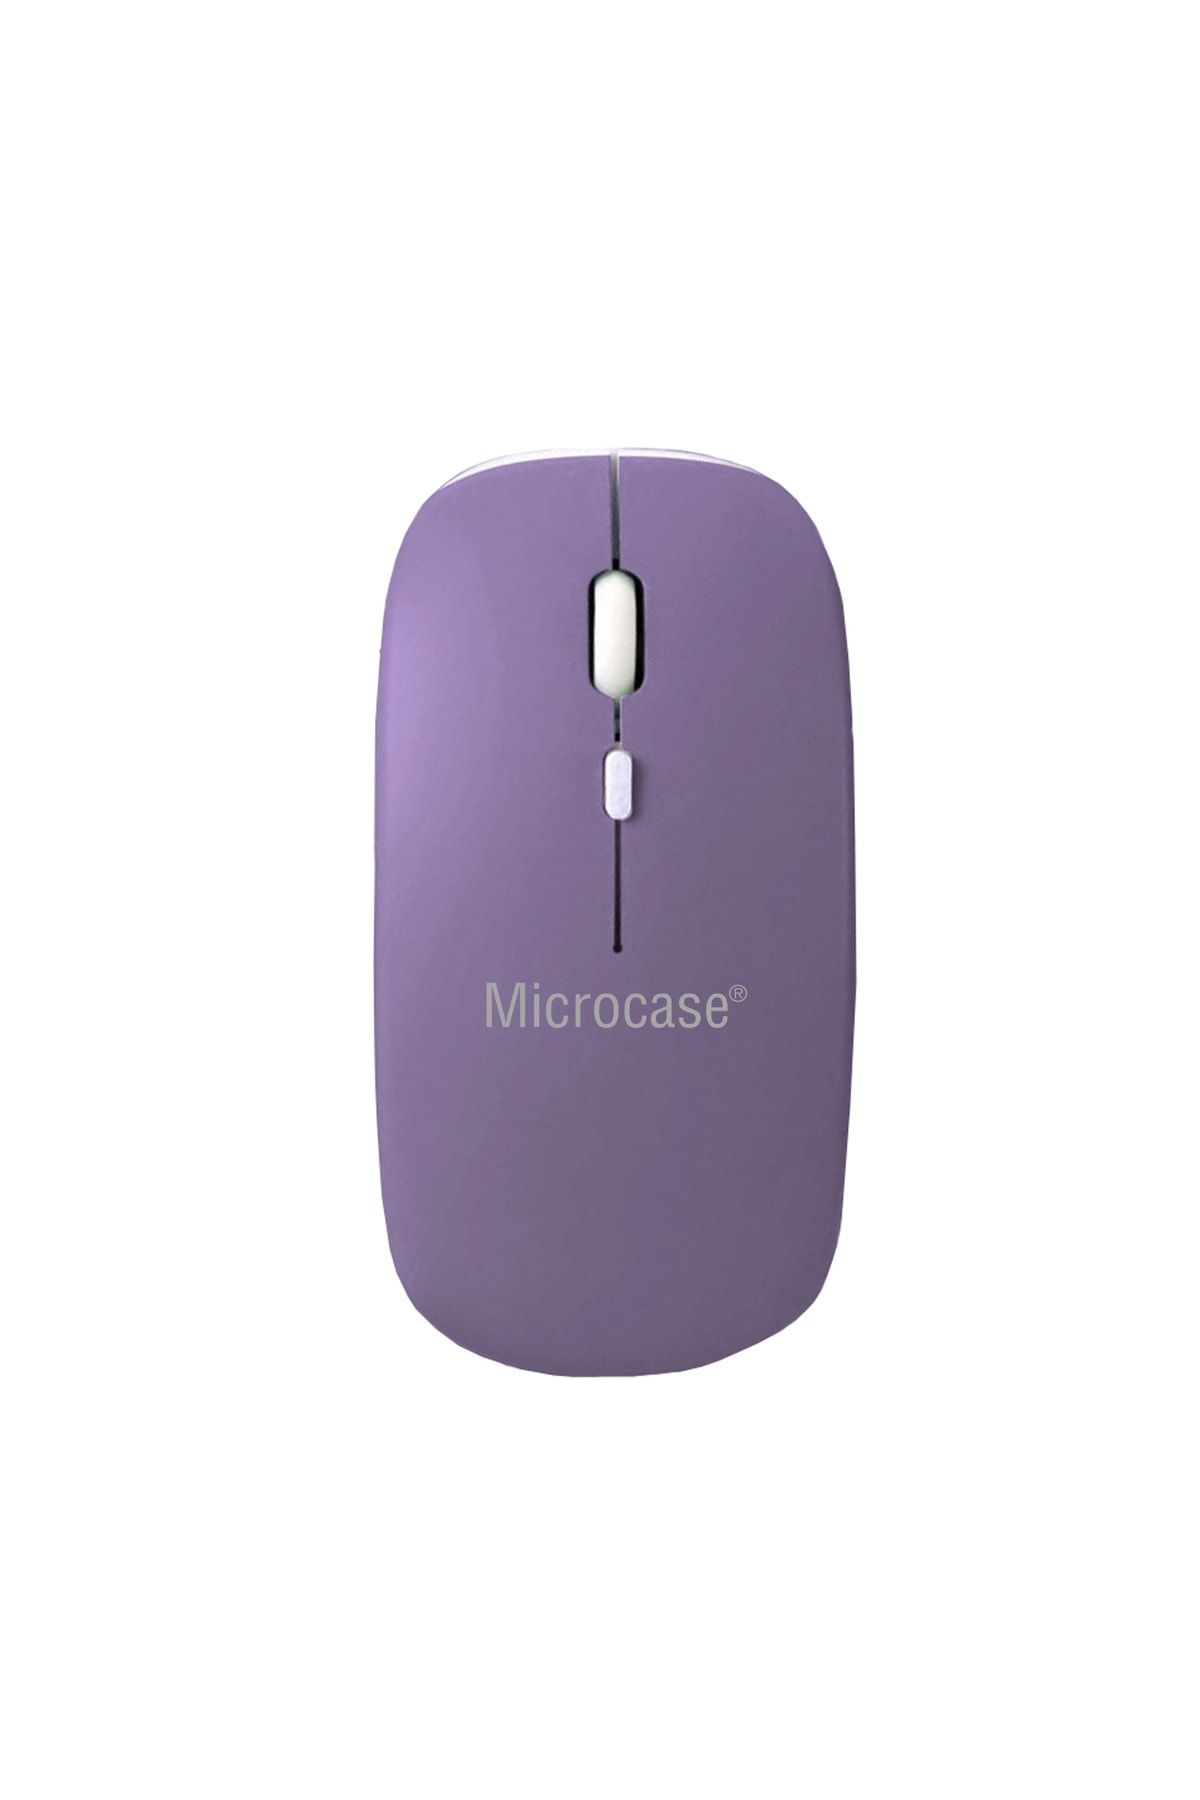 Microcase 1600 Dpı Şarj Edilebilir 2.4 Ghz Çift Modlu Bluetooth Kablosuz Mouse -model Al2675 Mor